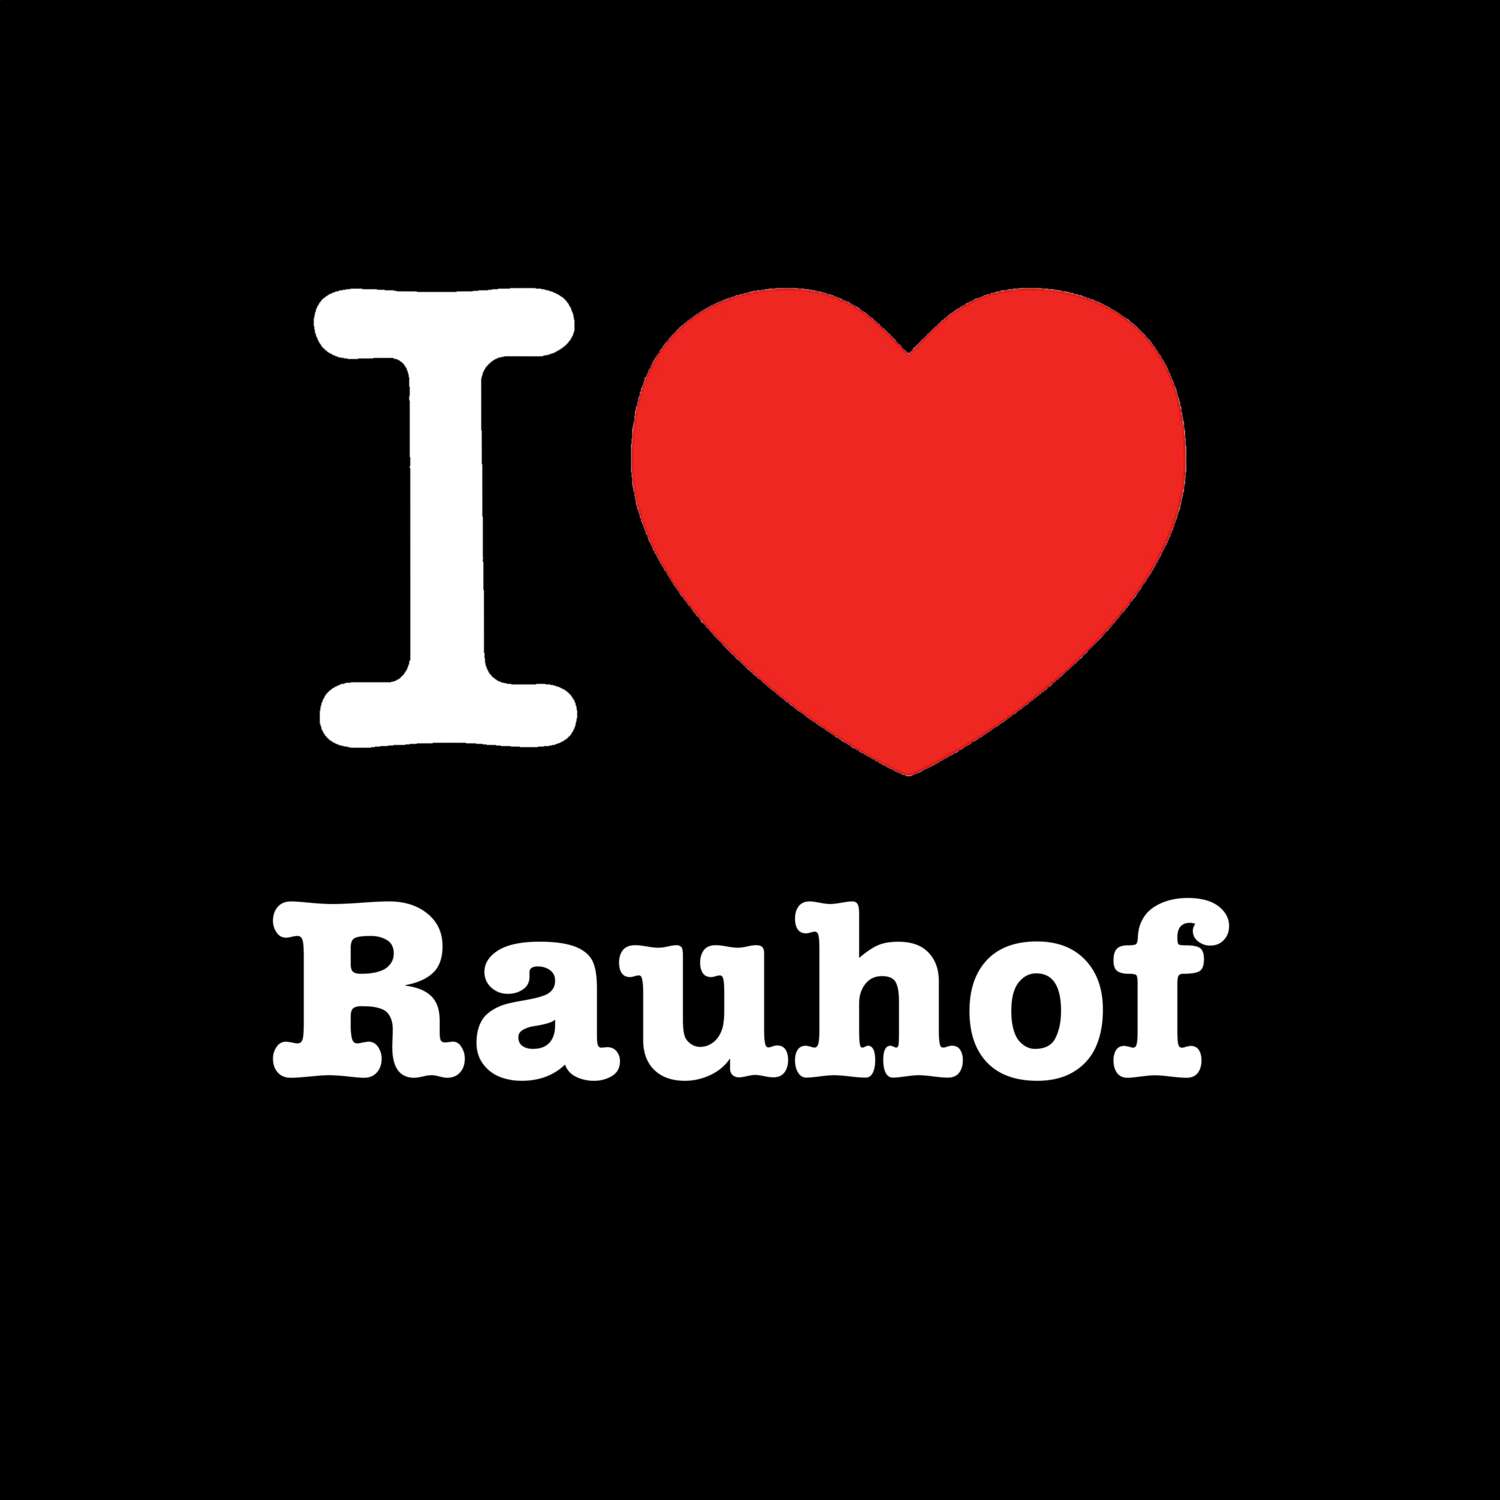 Rauhof T-Shirt »I love«